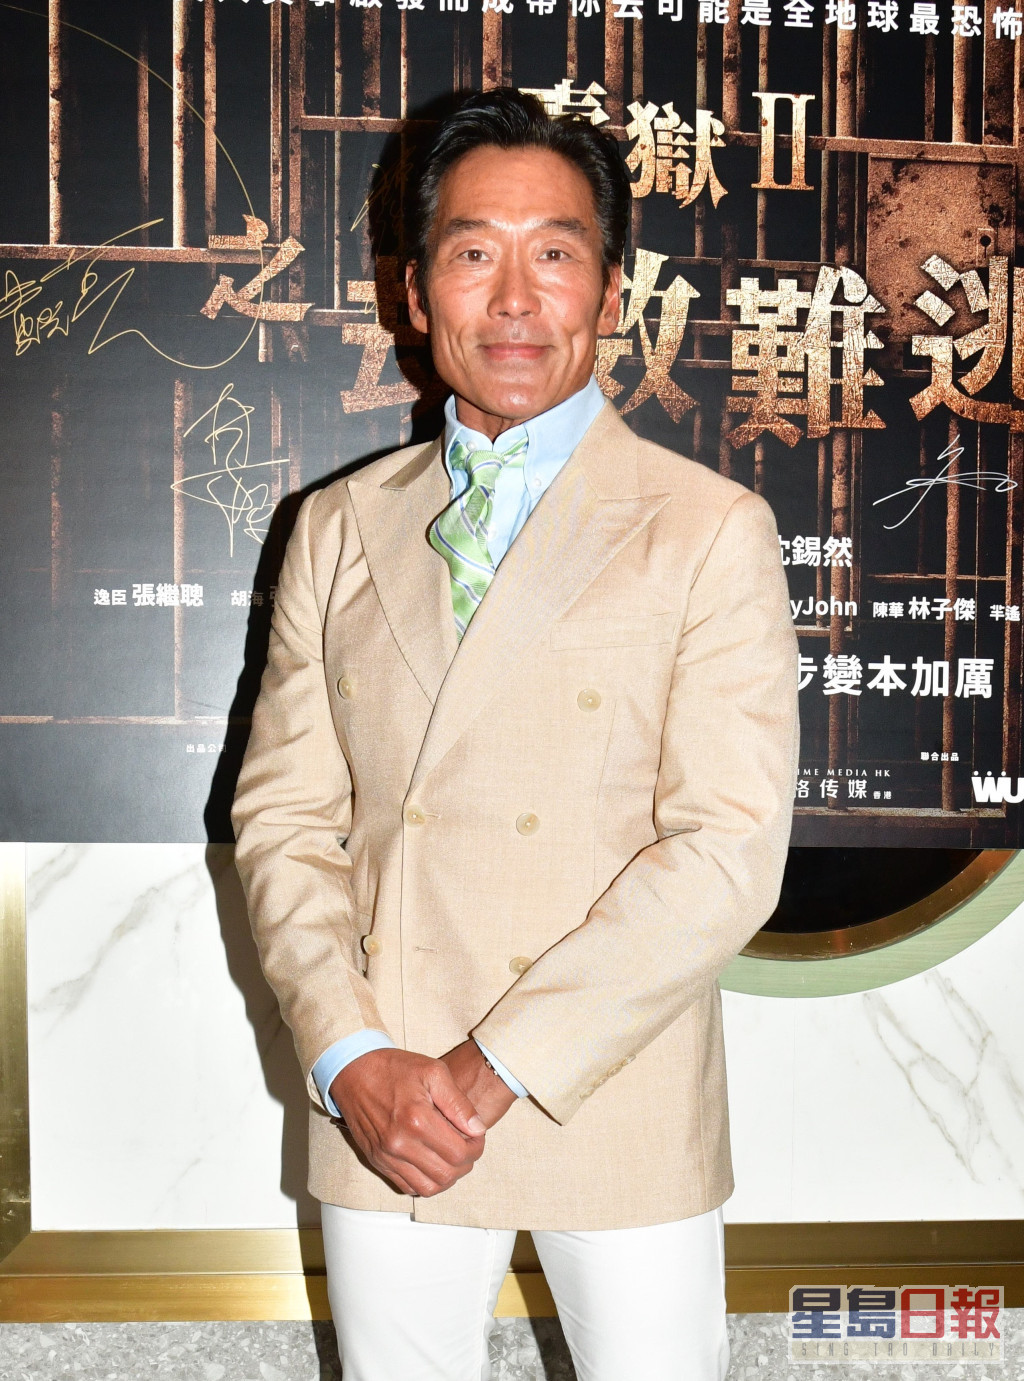 郑浩南9月中出席电影《壹狱II 劫数难逃》煞科宴时自爆20年婚姻现危机。